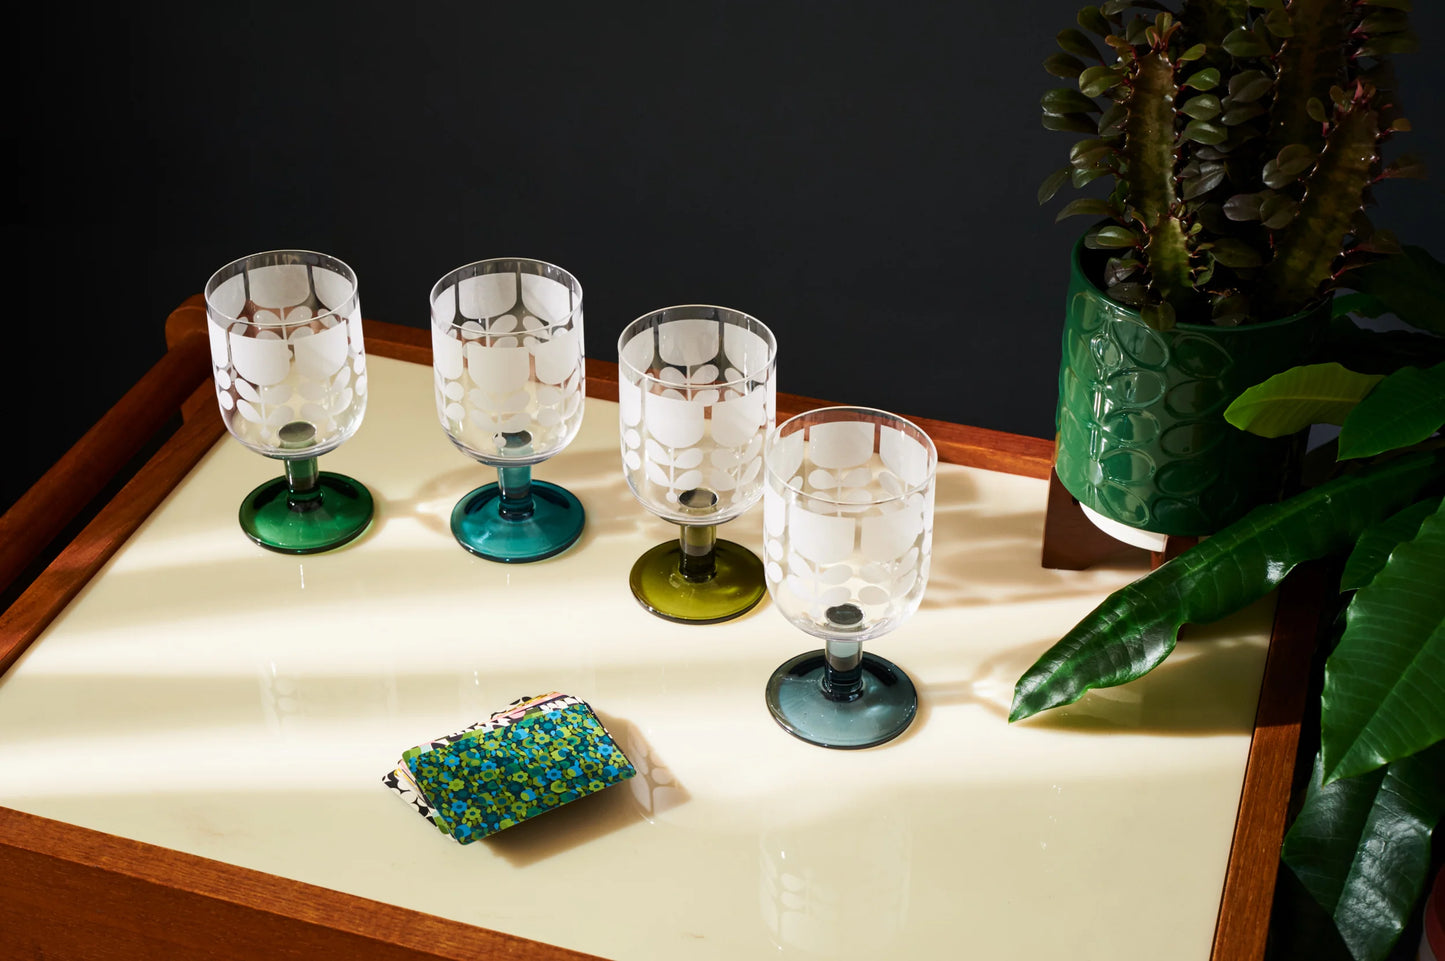 Orla Kiely Atomic Flower Wine Glasses Set of 4 - Green